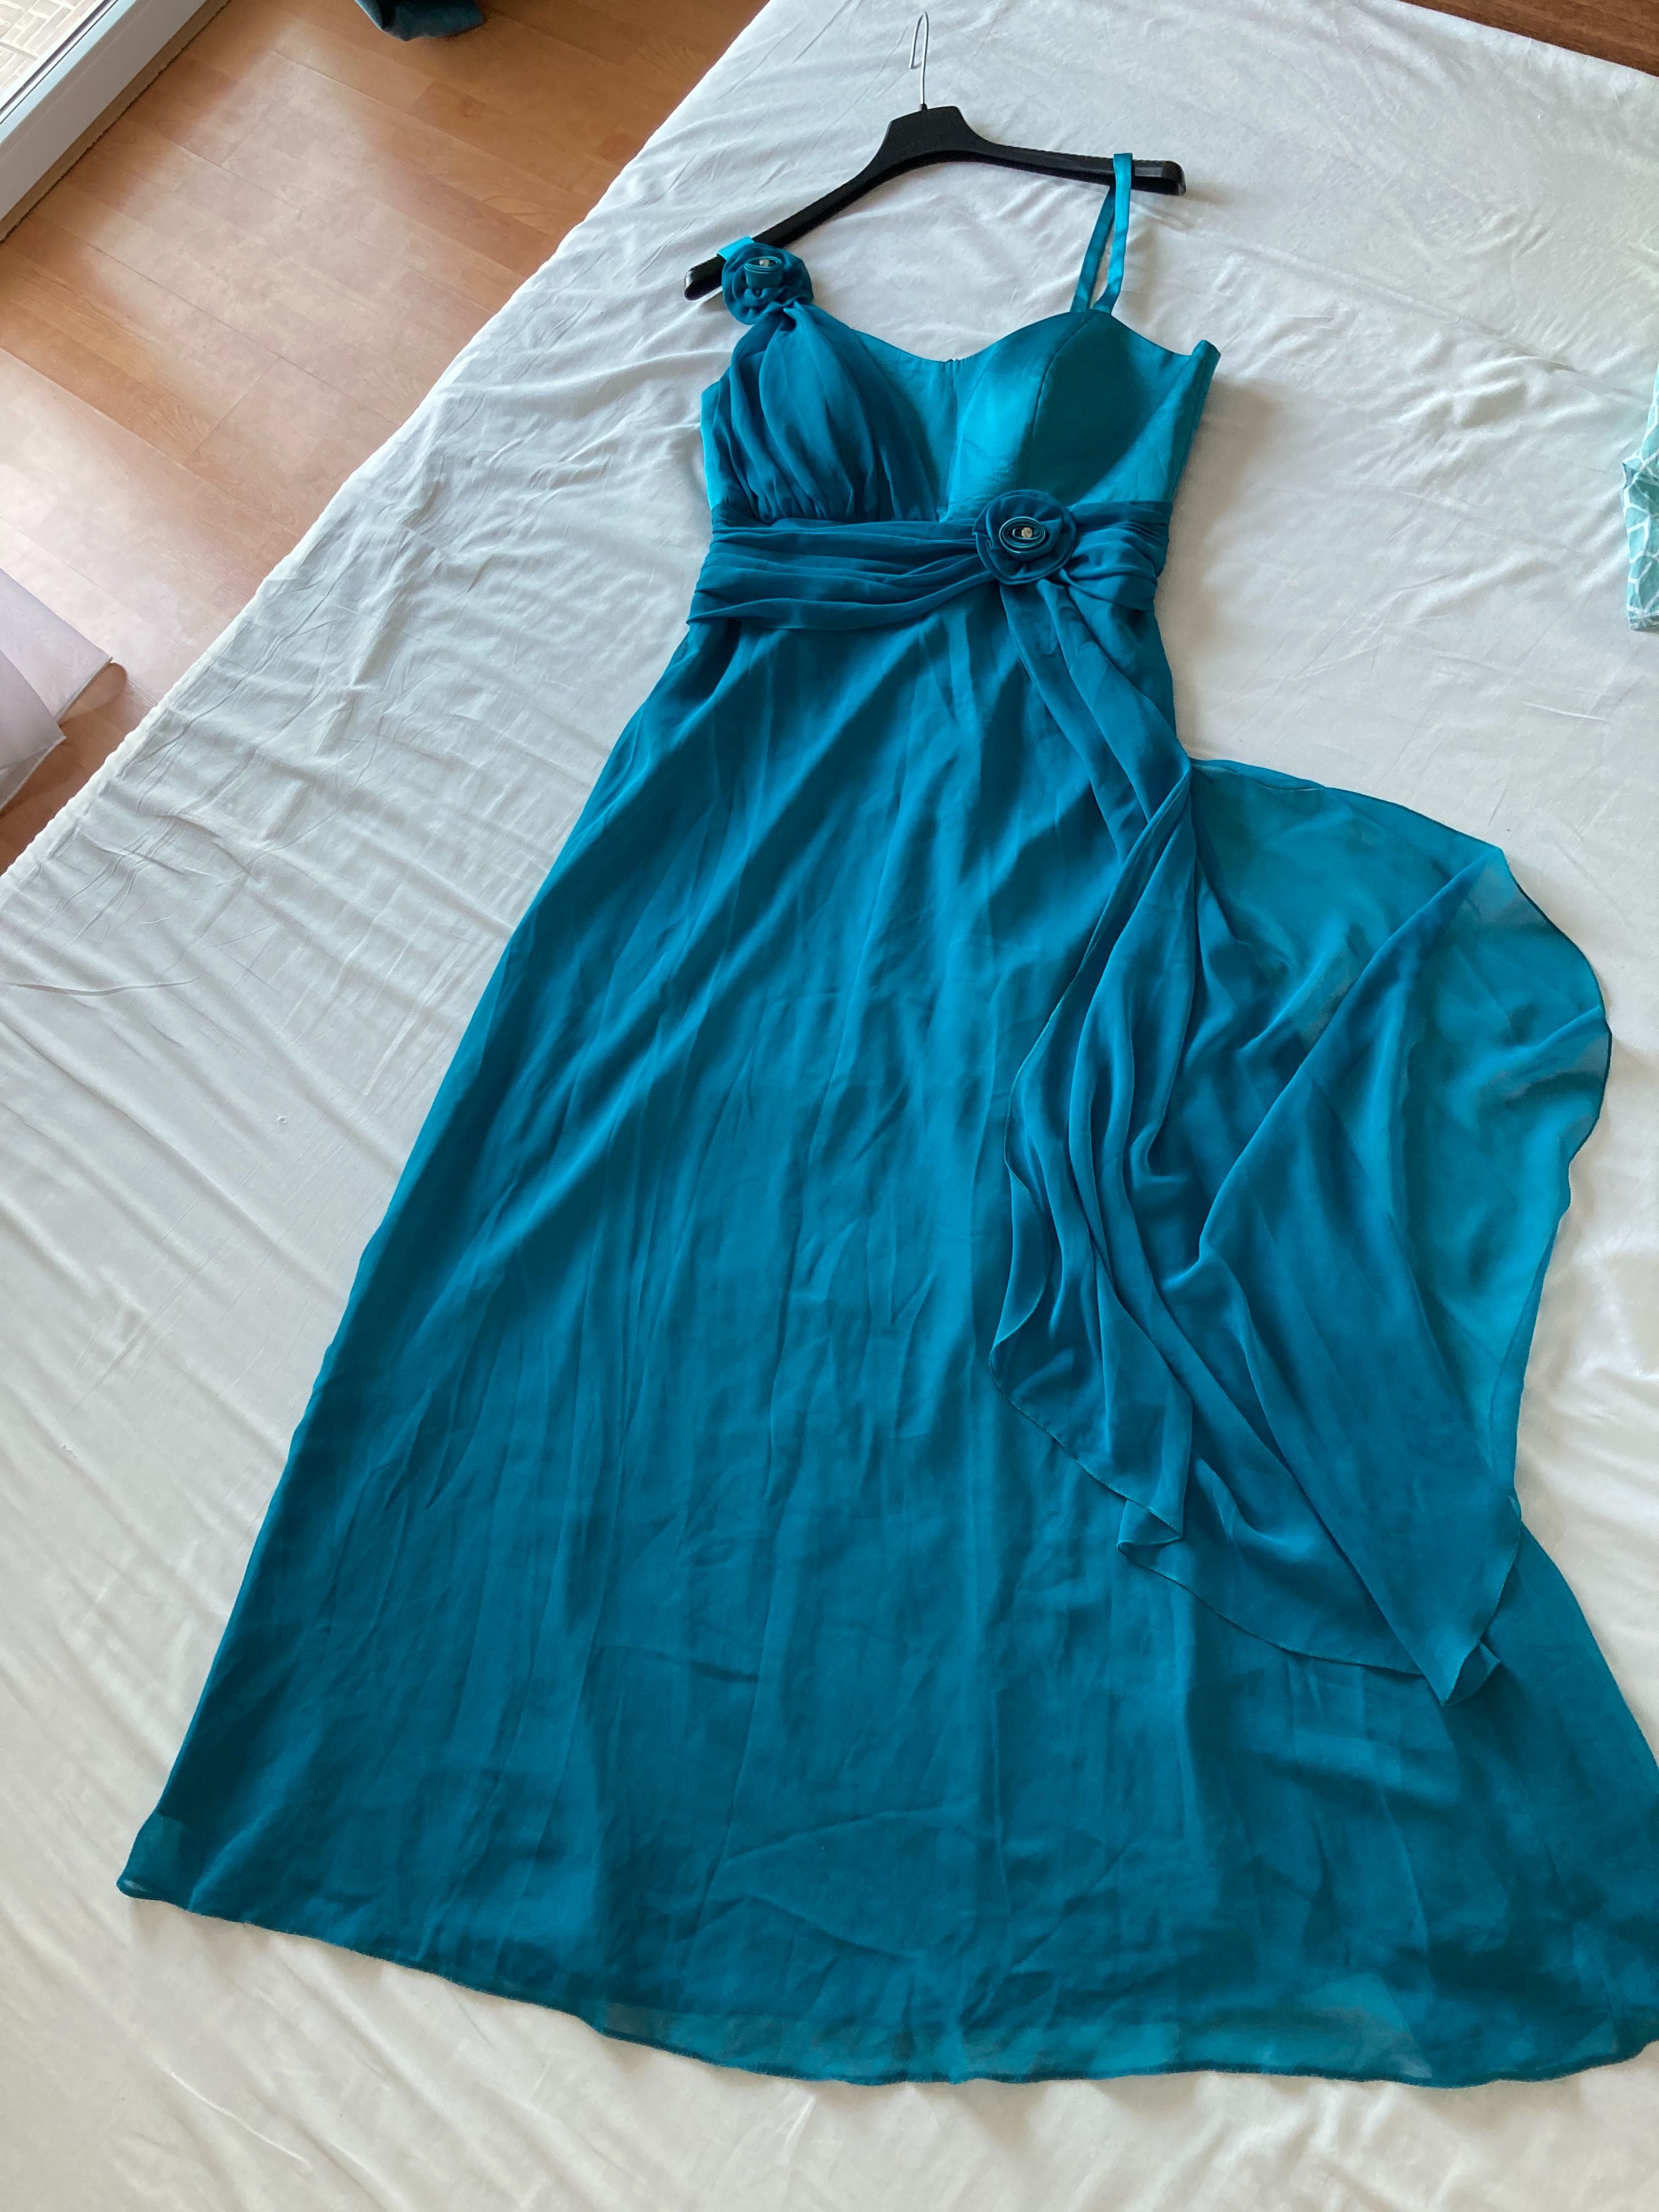 Rochie lunga, albastra, marime 42-44, rochie de ocazie